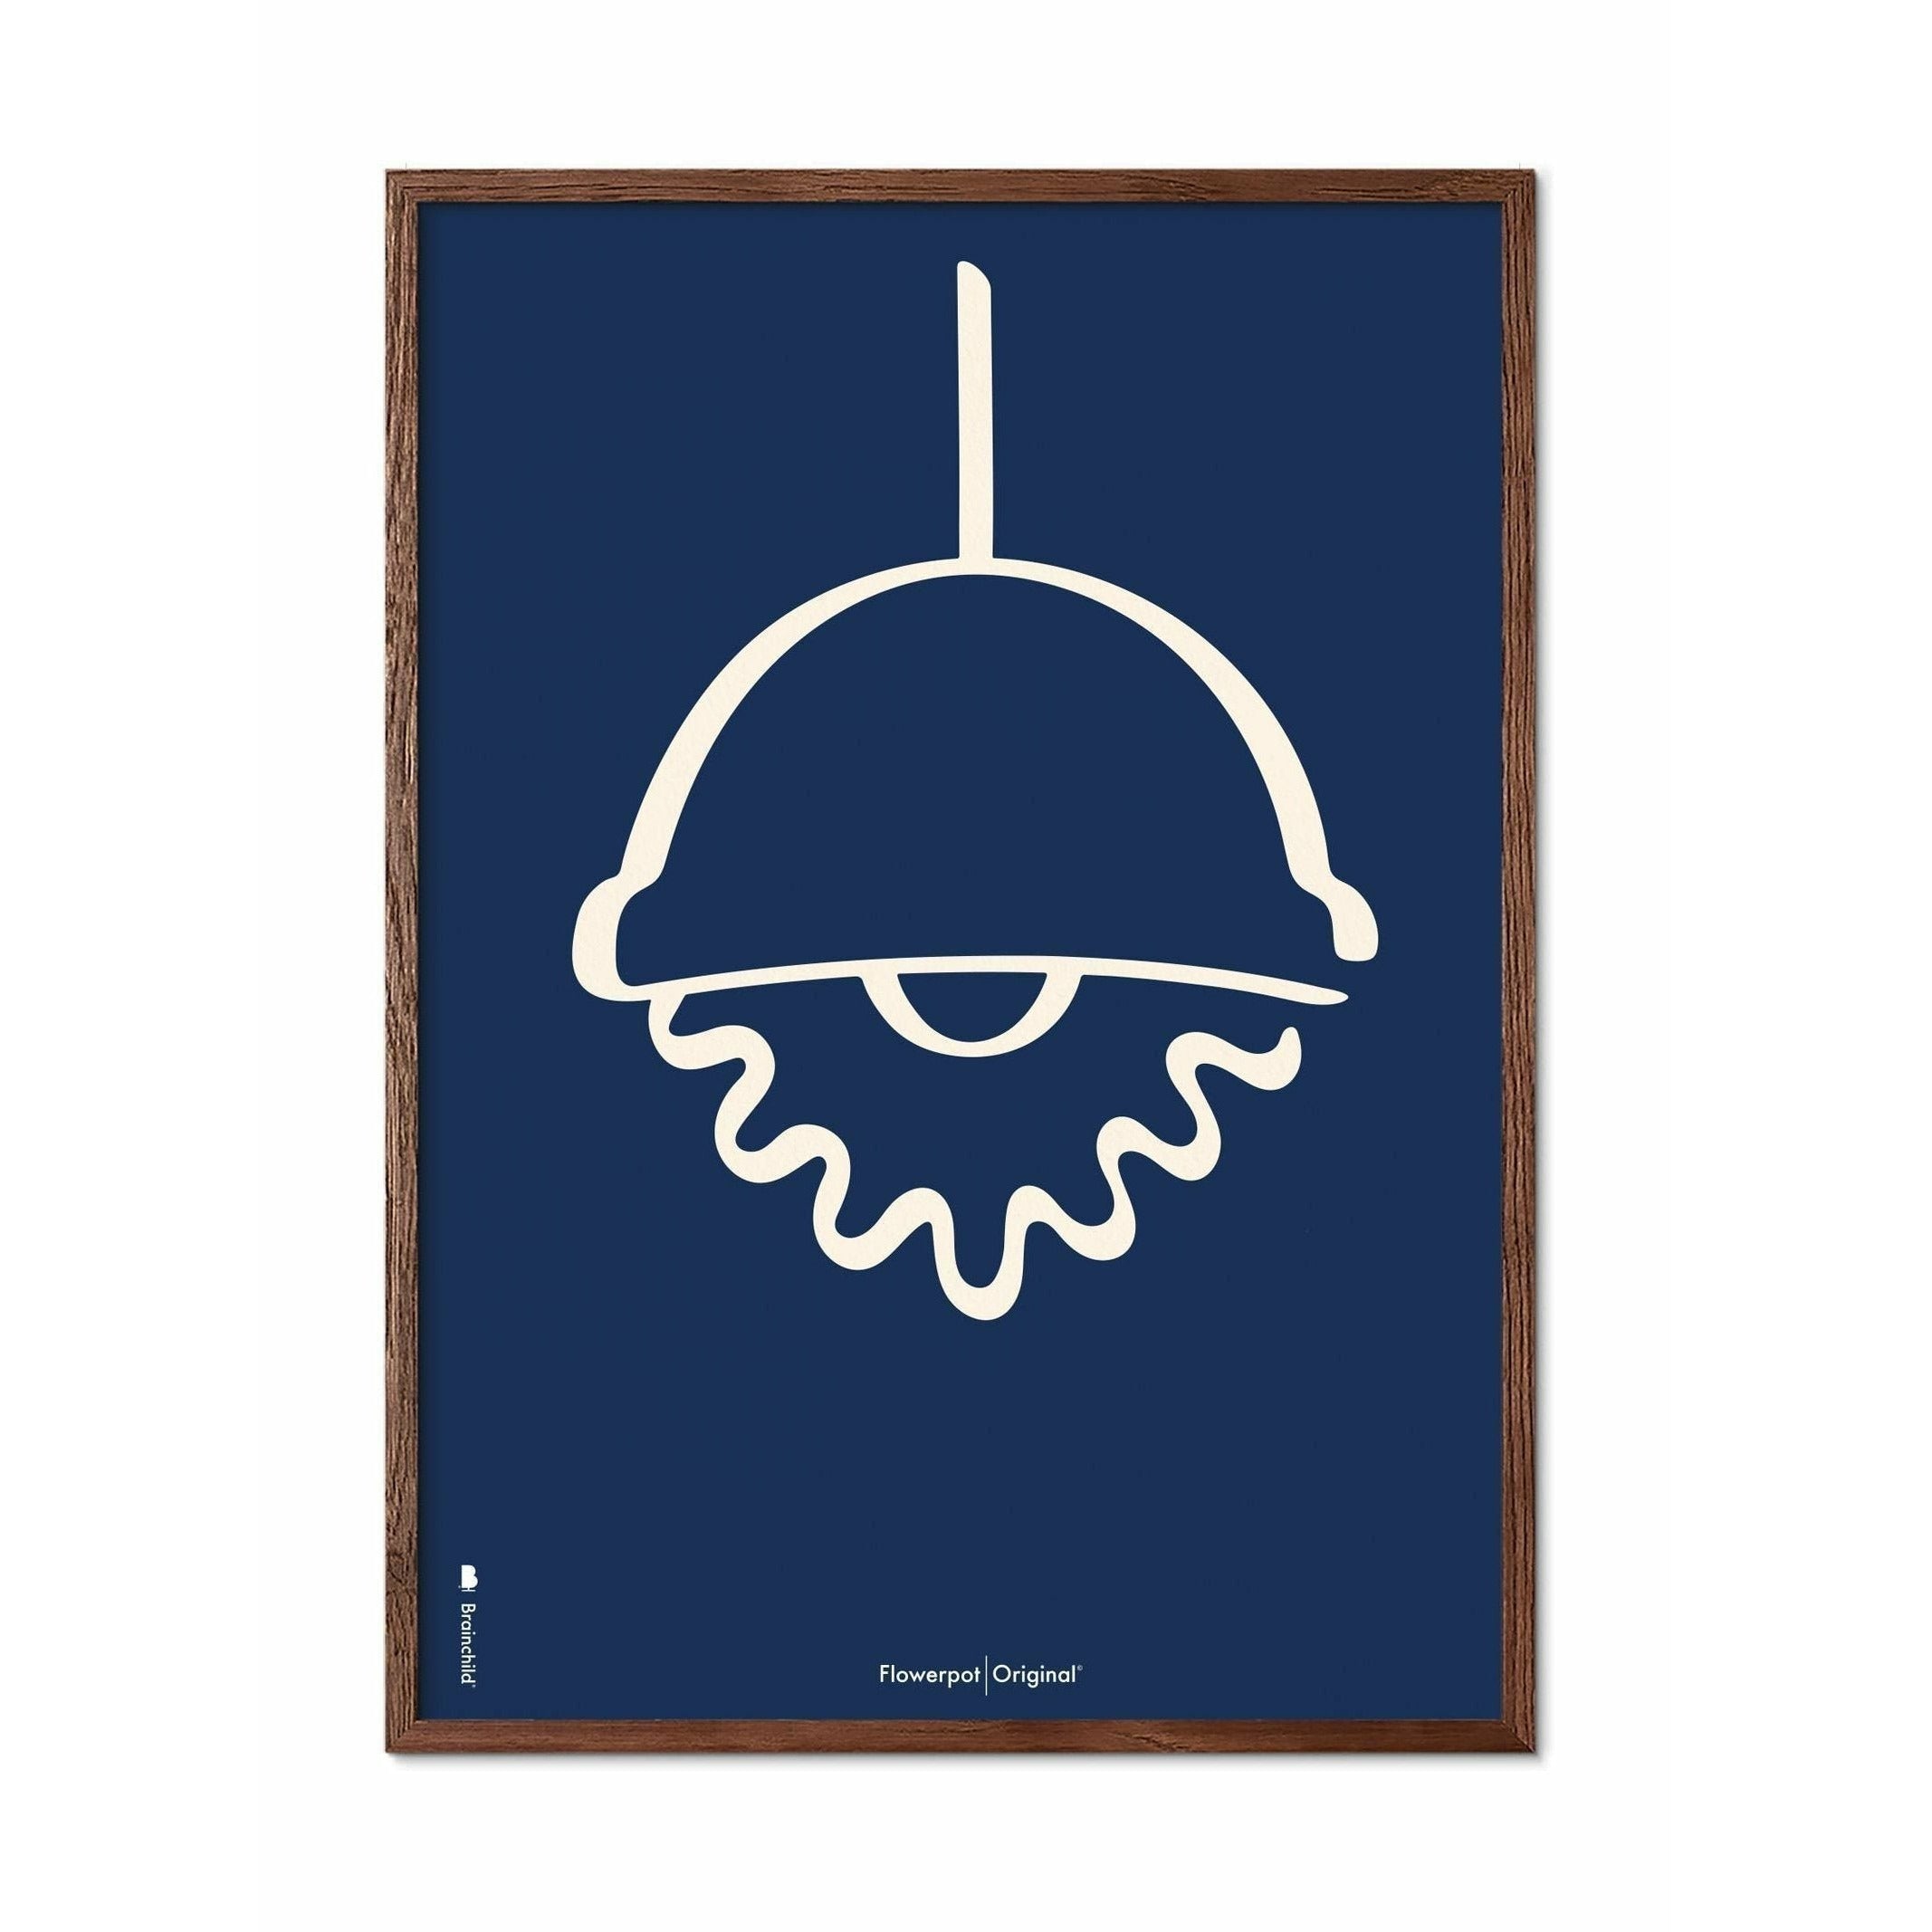 Brainchild Flowerpot Line Poster, Dark Wood Frame A5, Blue Background